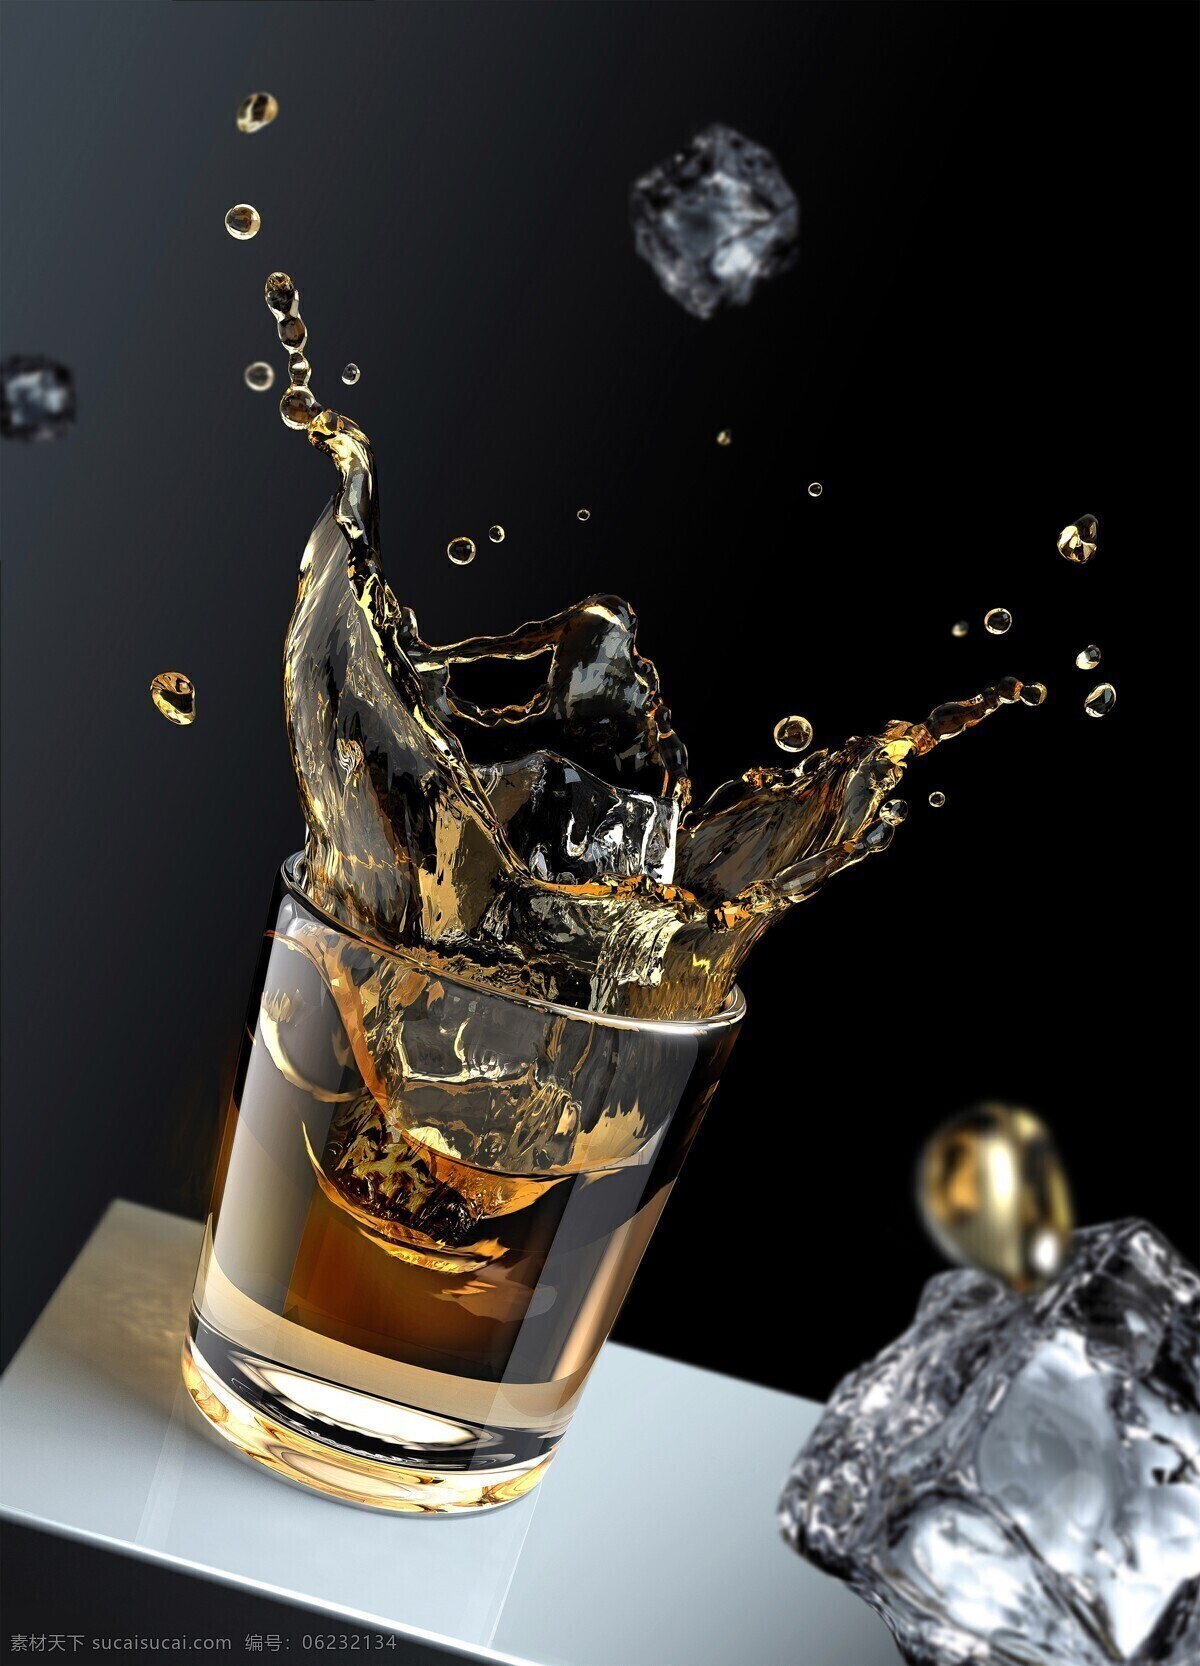 威士忌图片 威士忌 烈酒 冰块 玻璃酒杯 酒水 美食 饮料 酒杯 加冰威士忌 餐饮美食